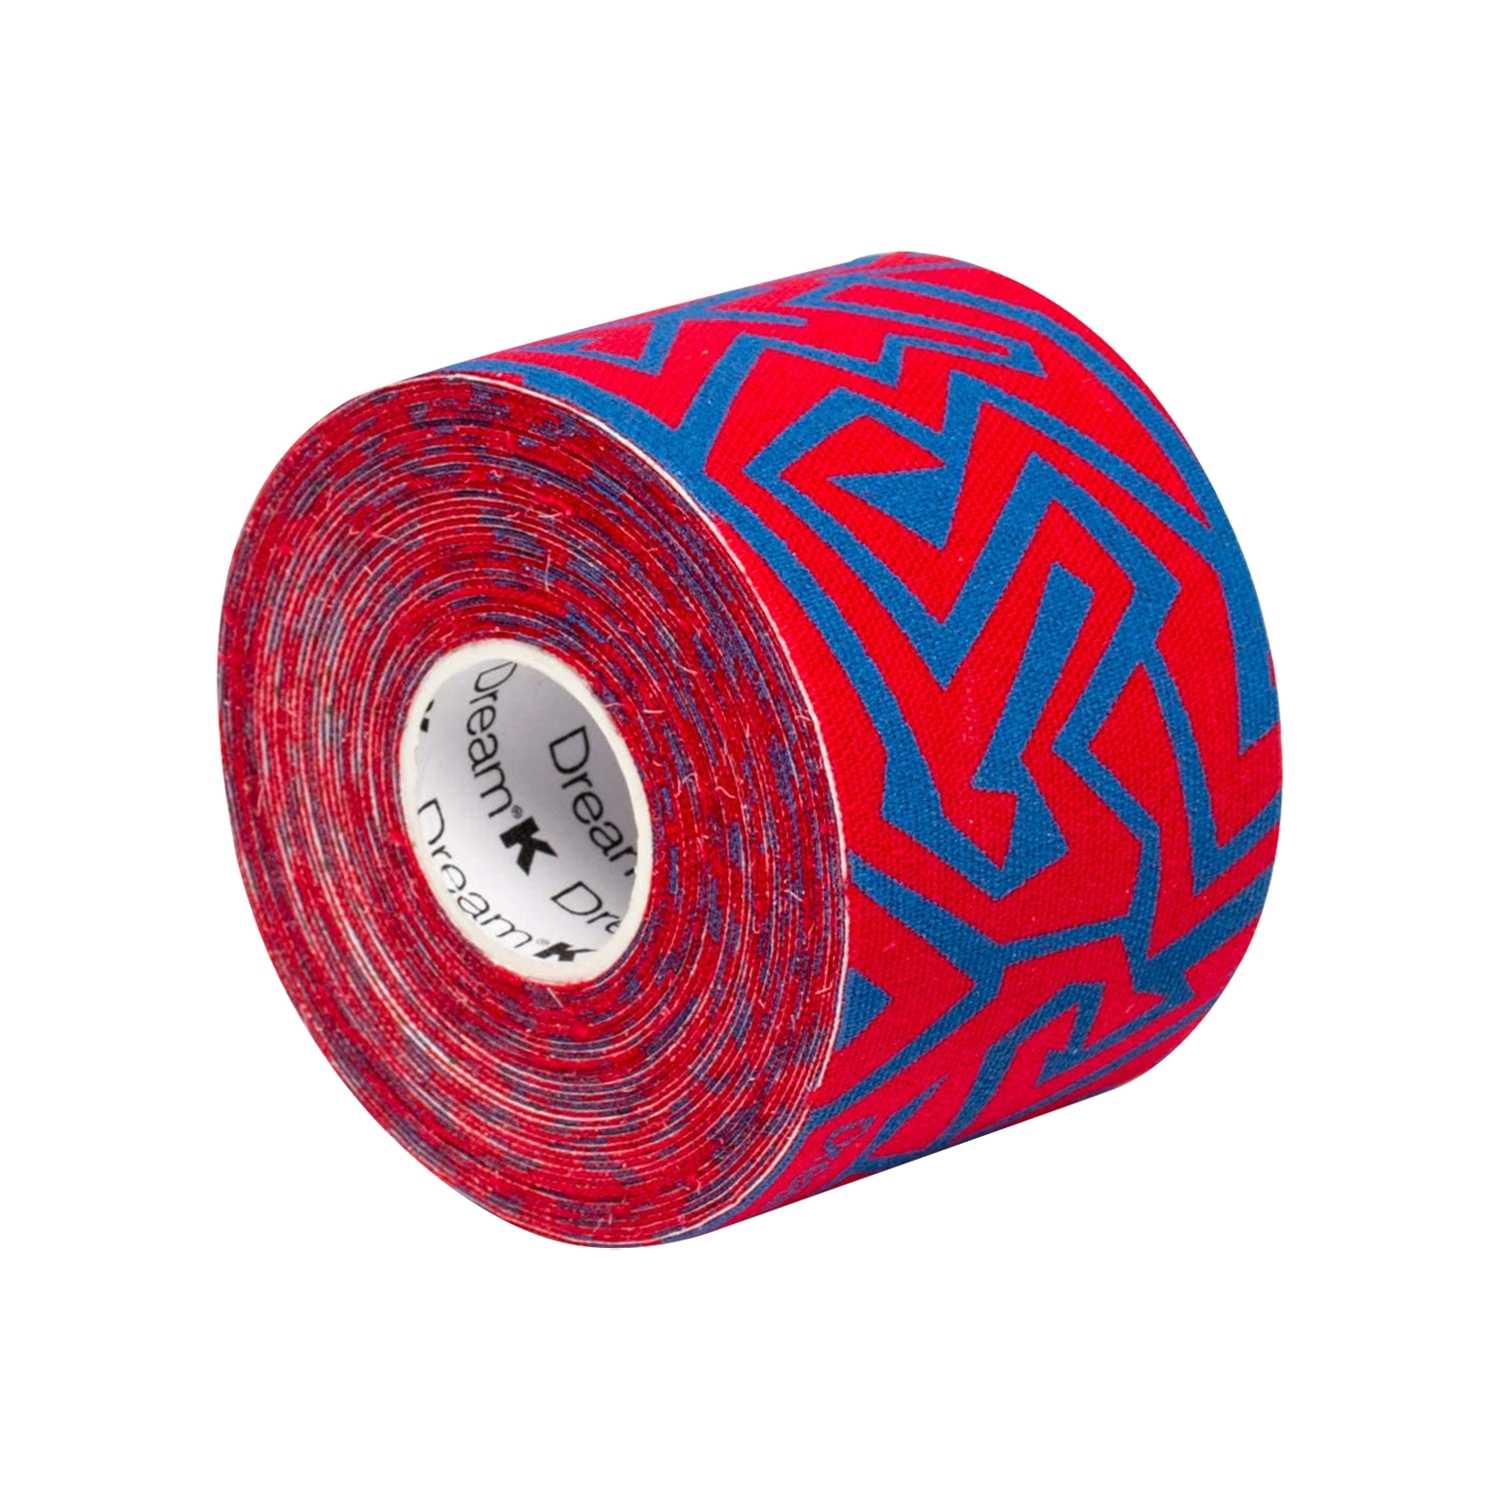 páska tejpovací SIXTUS DREAM-K TRIBE červená-modrá